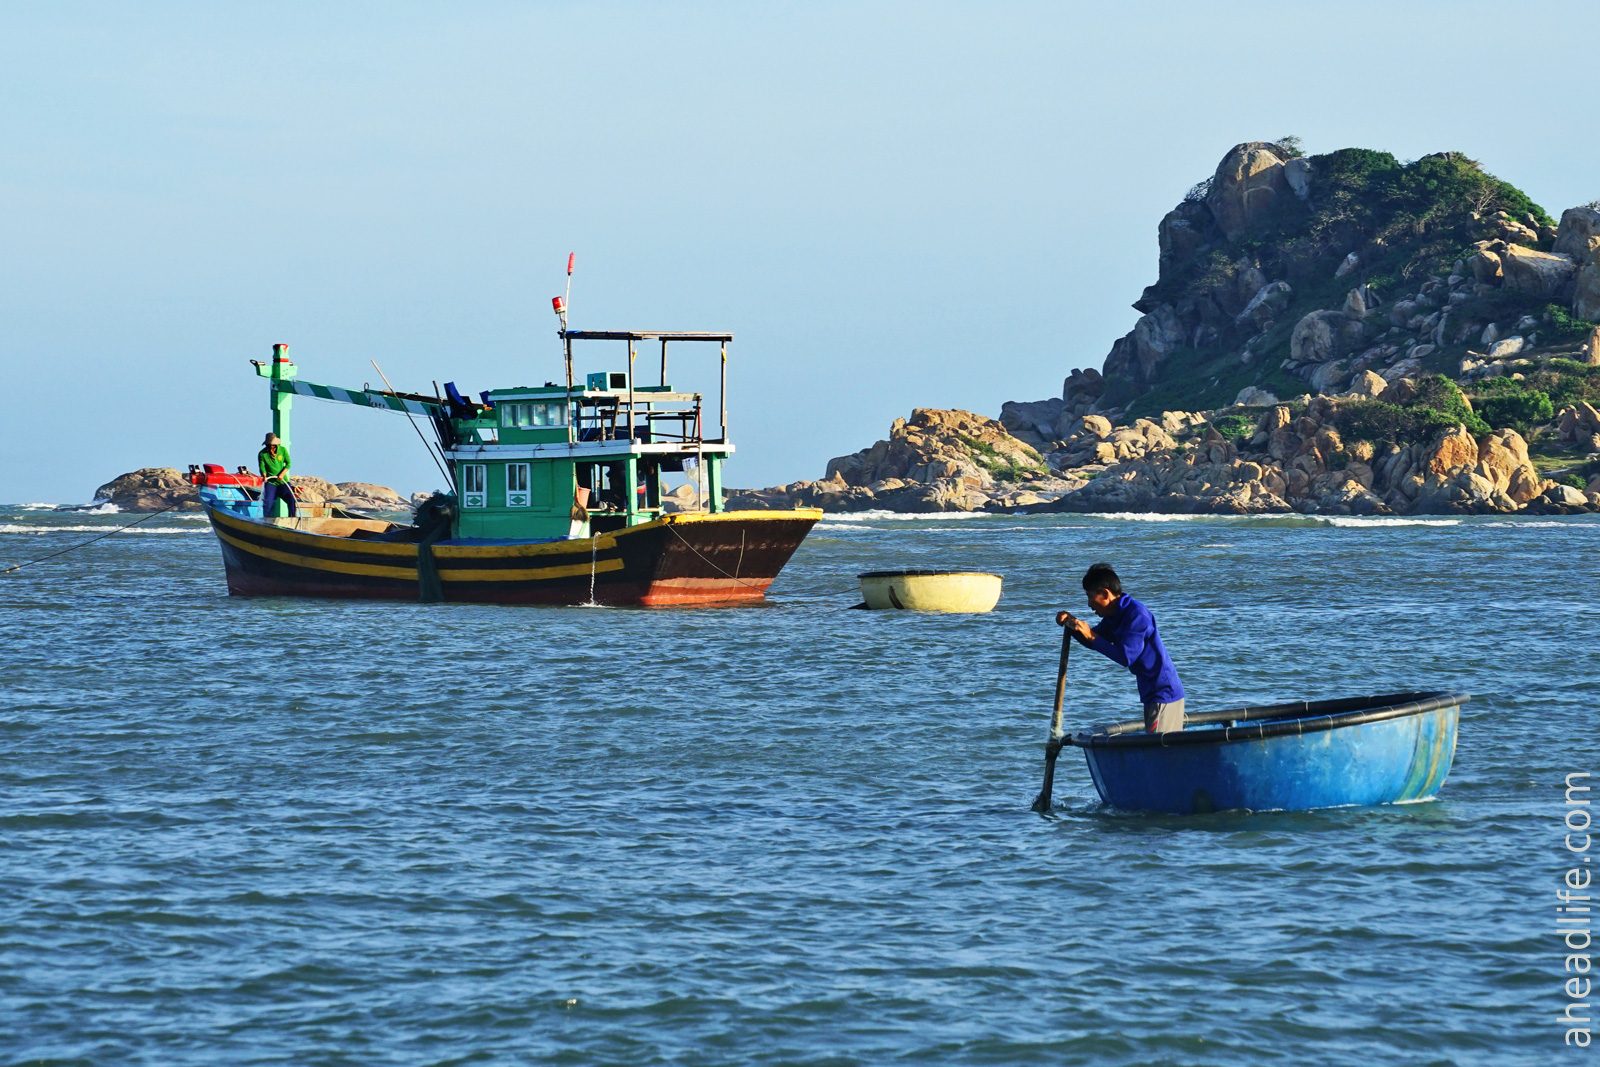 Вьетнамские круглые лодки Тхунг Чай